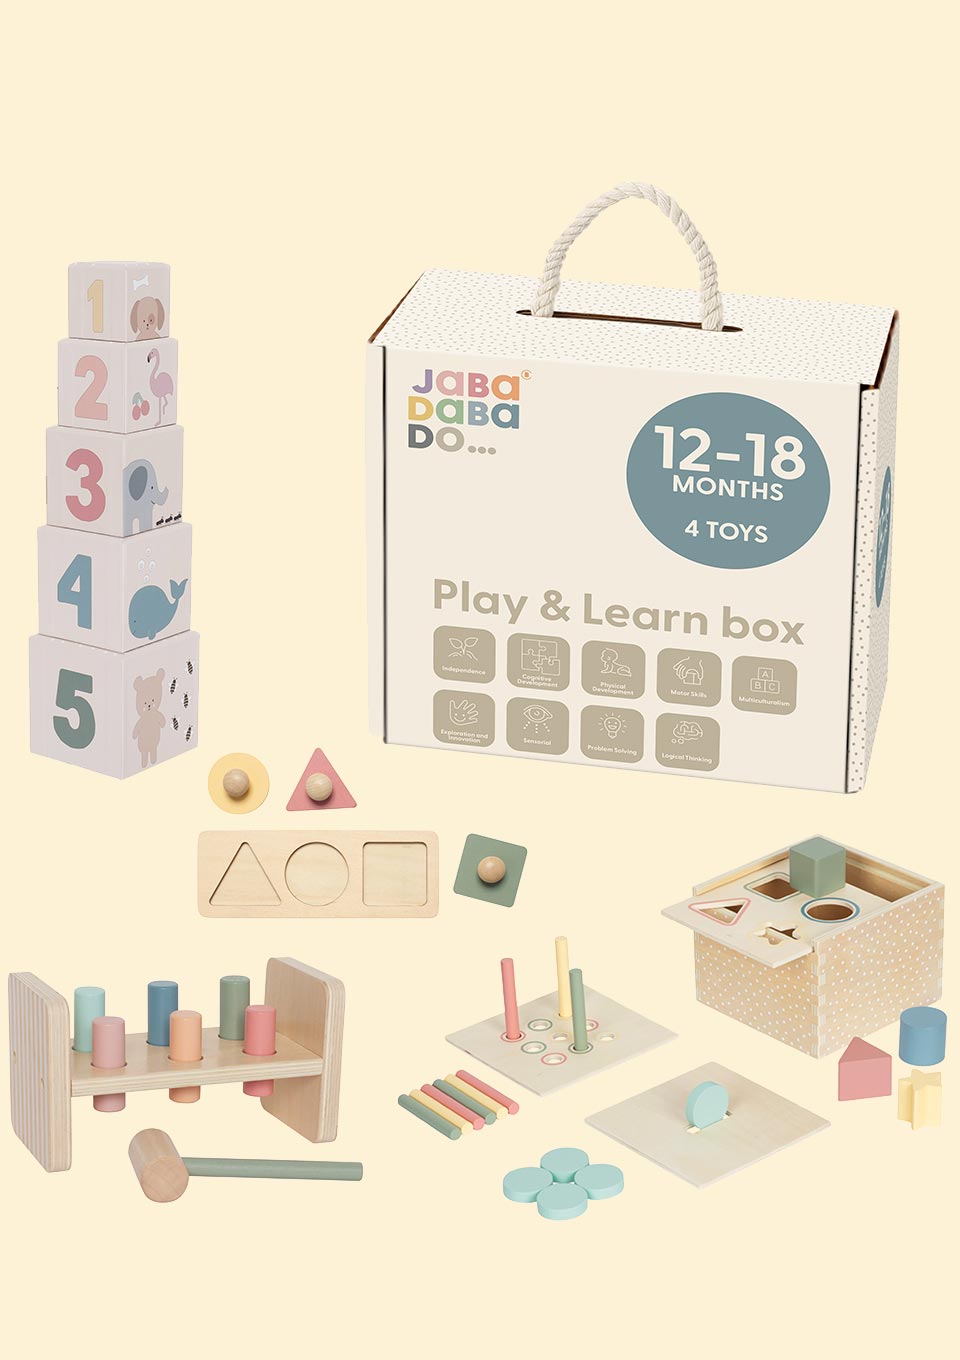 Jabadabado Spiel & Lern - Box / 12 - 18 Monate - tiny - boon.com